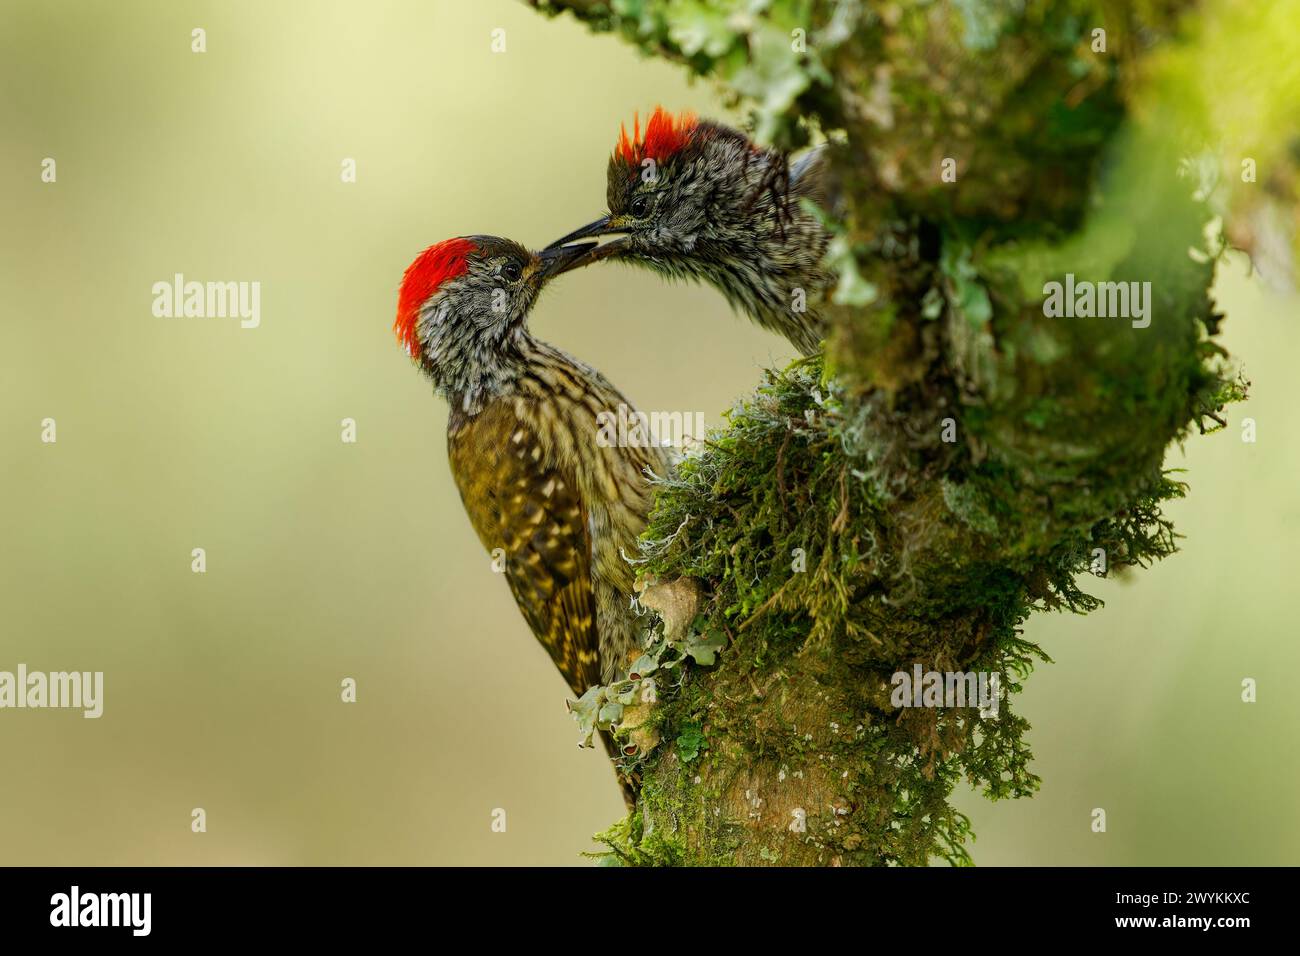 Cardinal pic des bois - Chloropicus Dendropicos fuscescens oiseau résident commun dans une grande partie de l'Afrique subsaharienne, de la forêt dense au buisson épine, sur le g Banque D'Images